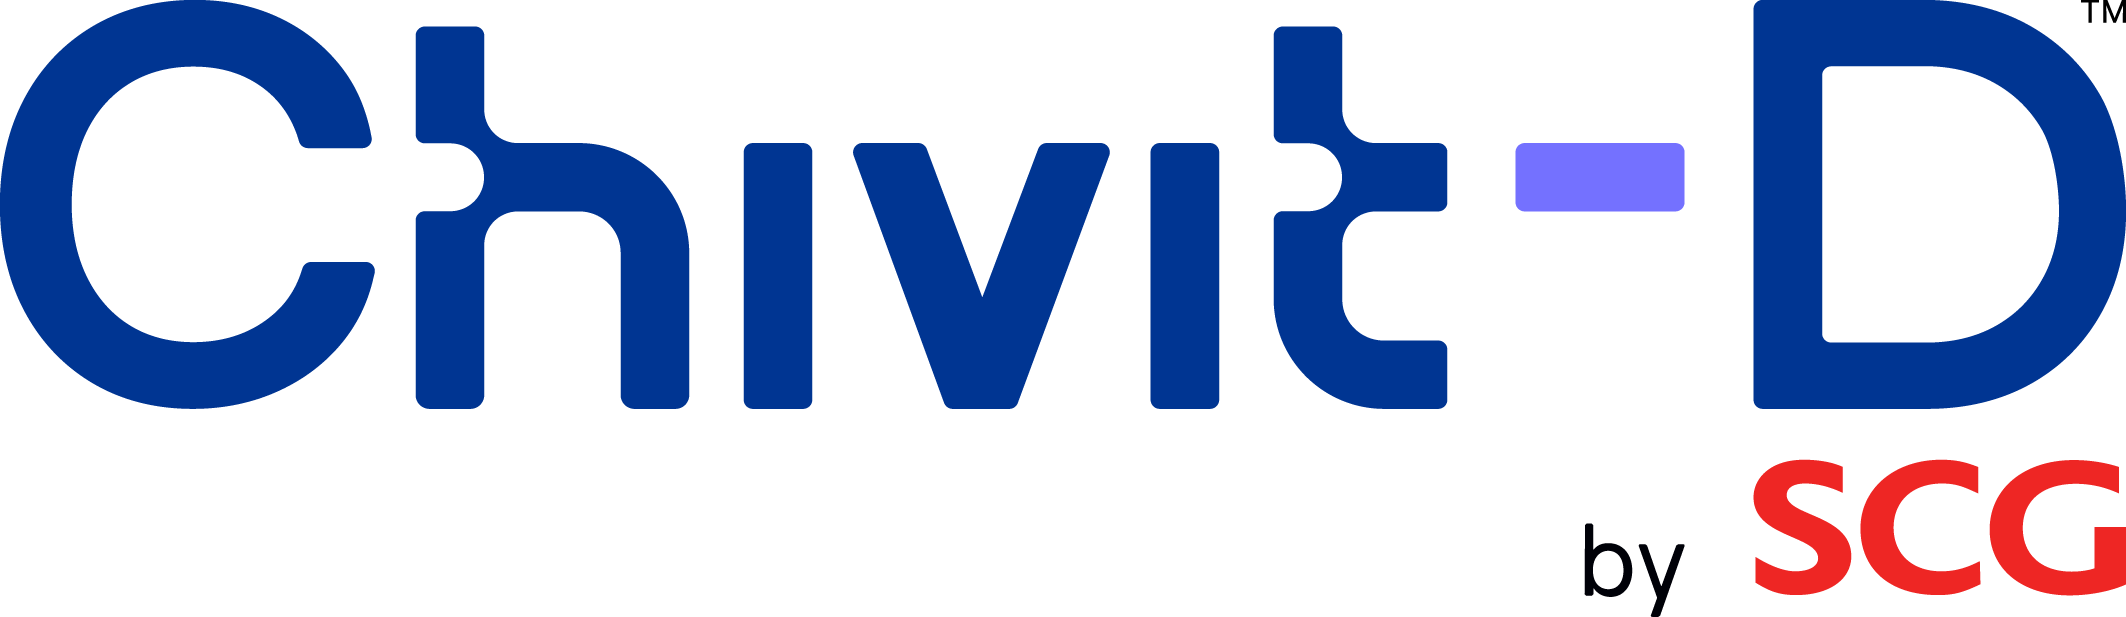 SCG-Chivit-D_Full-Colour-Logo_with-Trademark_by-SCG_En_20221011